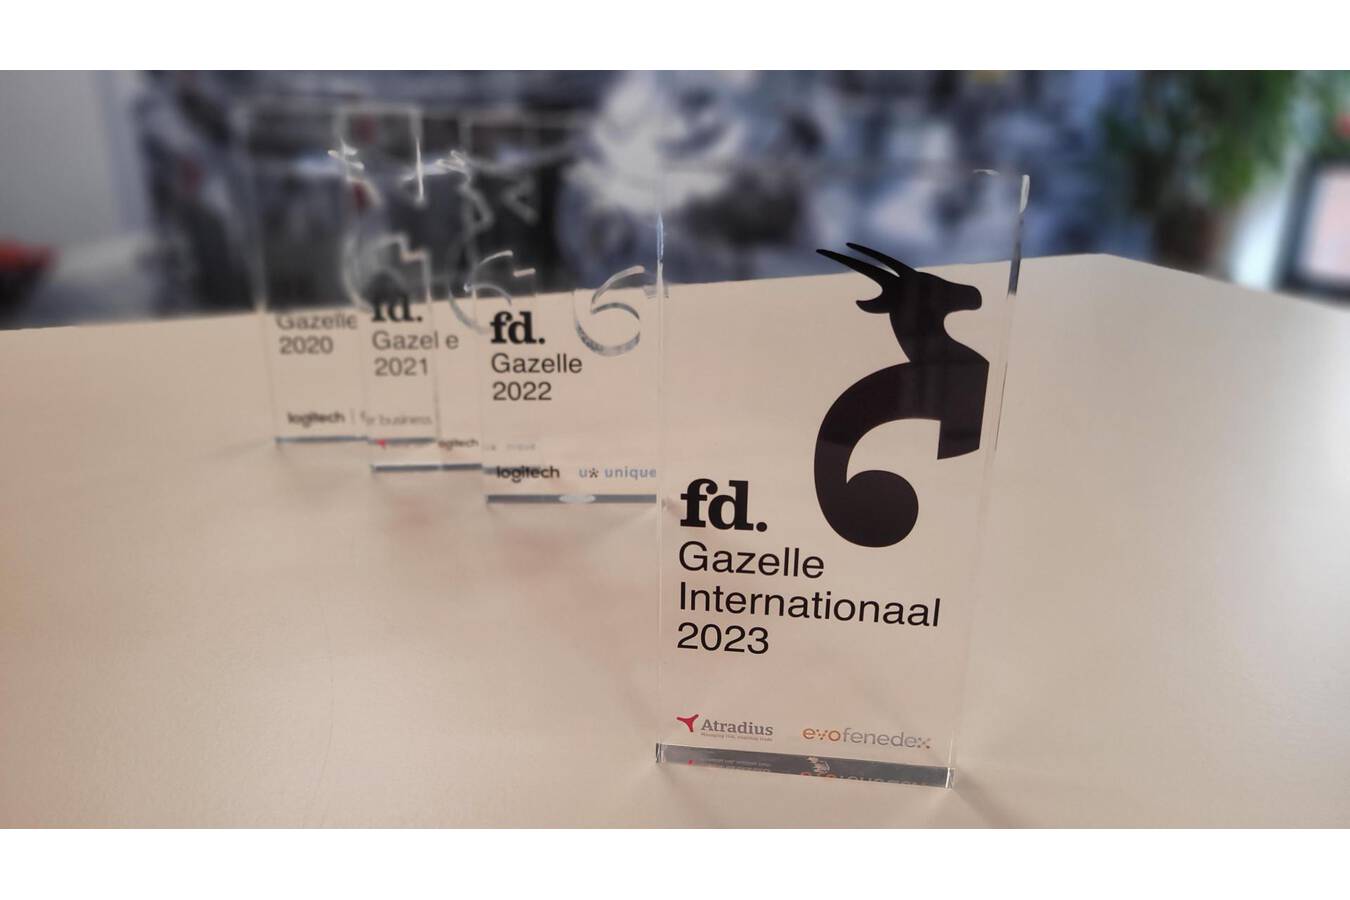 Foeth auch international als wachstumsstark anerkannt Nach drei Jahren als FD Gazelle (verliehen von einer führenden niederländischen Finanzzeitung) darf sich Foeth nun auch Gazelle International nennen